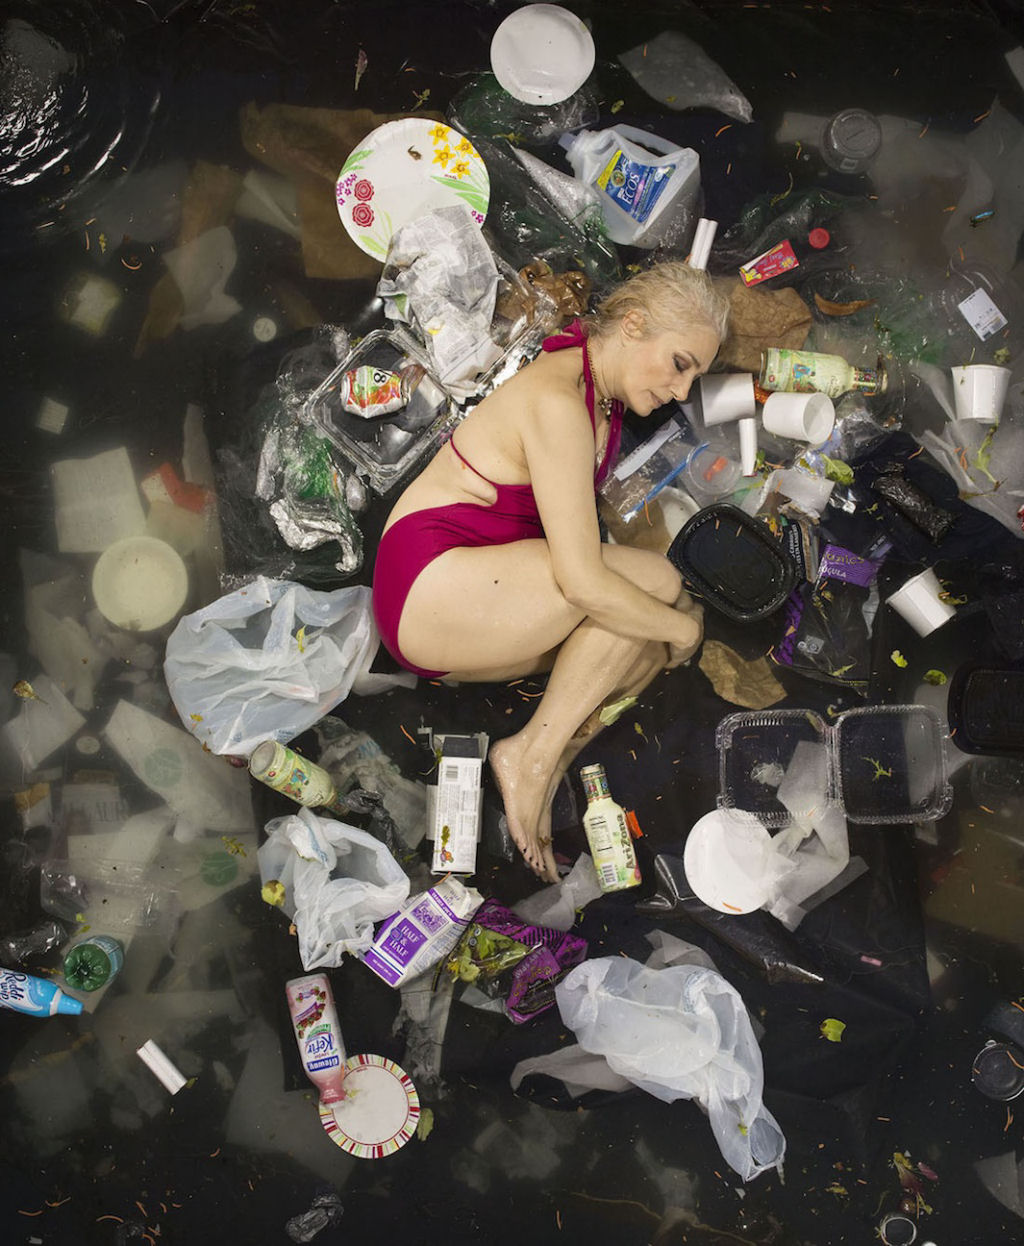 Srie mostra pessoas deitadas no seu lixo acumulado durante uma semana 04